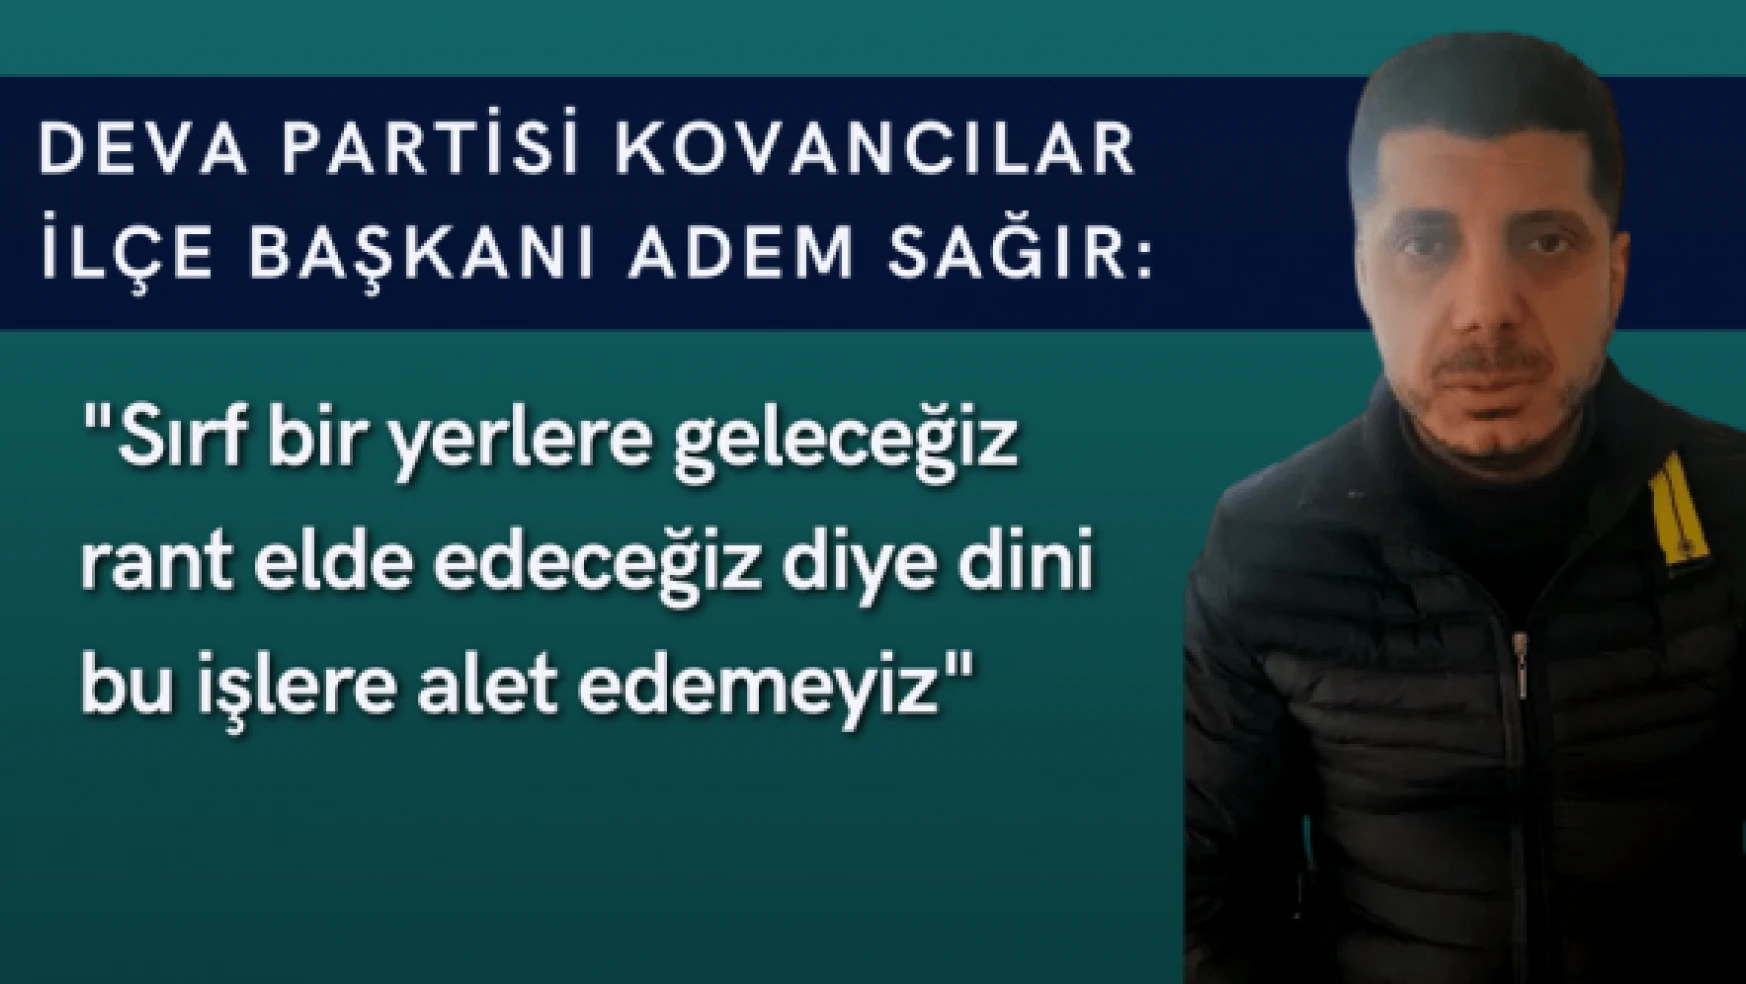 DEVA Partisi Kovancılar İlçe Başkanı Sağır'dan Babacan'a tepki!